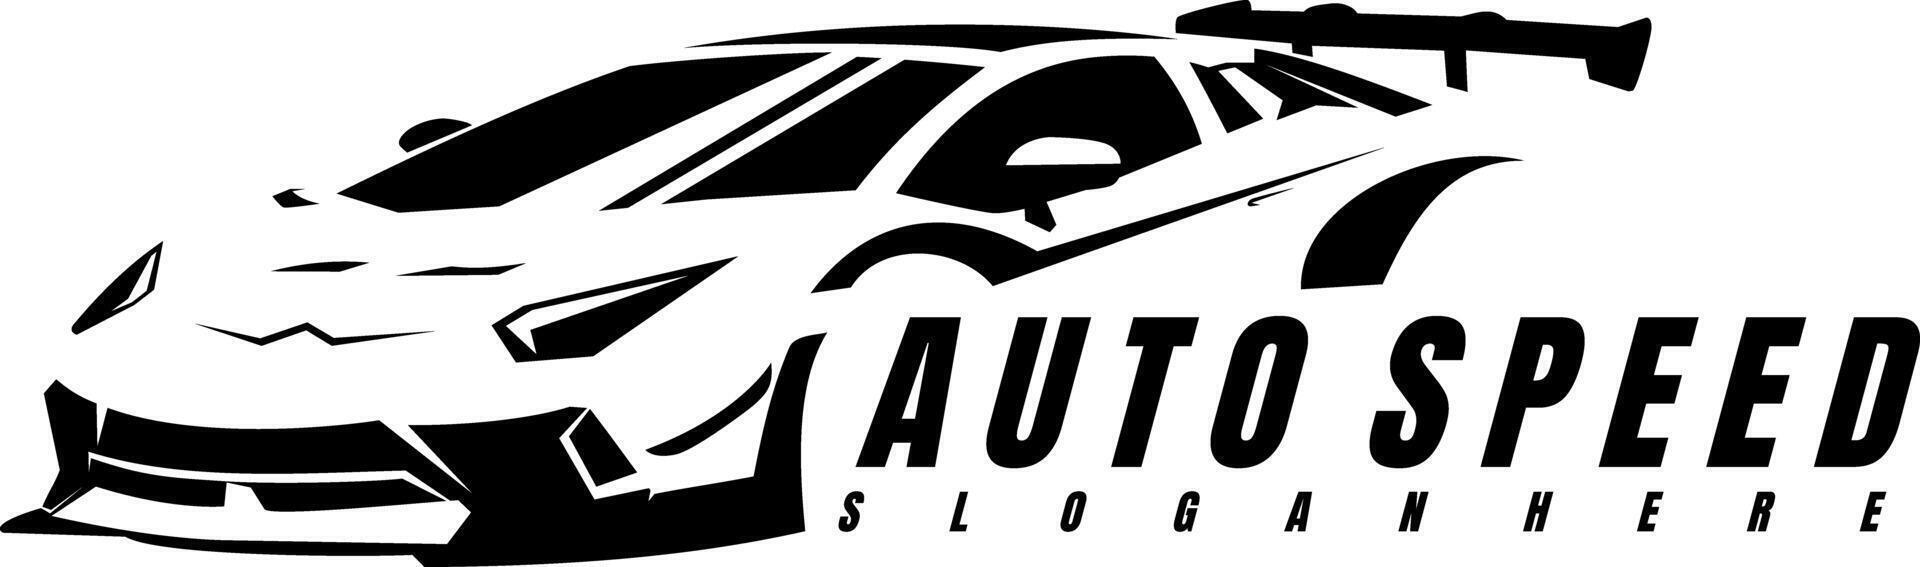 car rental logo design concept vector art